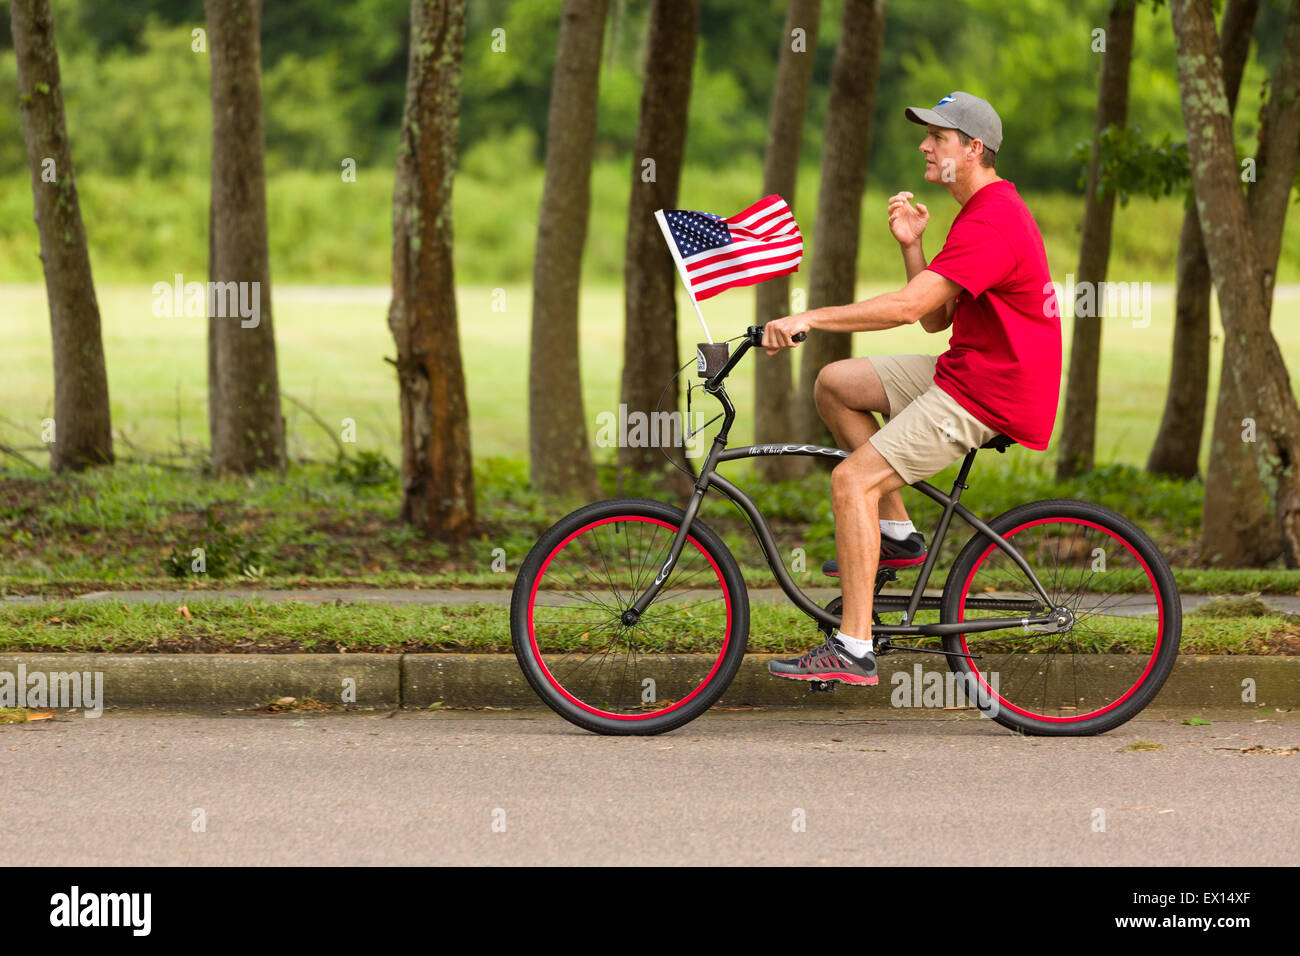 Un cycliste rides passé avec le drapeau américain au cours de l'île de Daniel ndependence Day Parade le 3 juillet 2015 à Charleston, Caroline du Sud. Banque D'Images